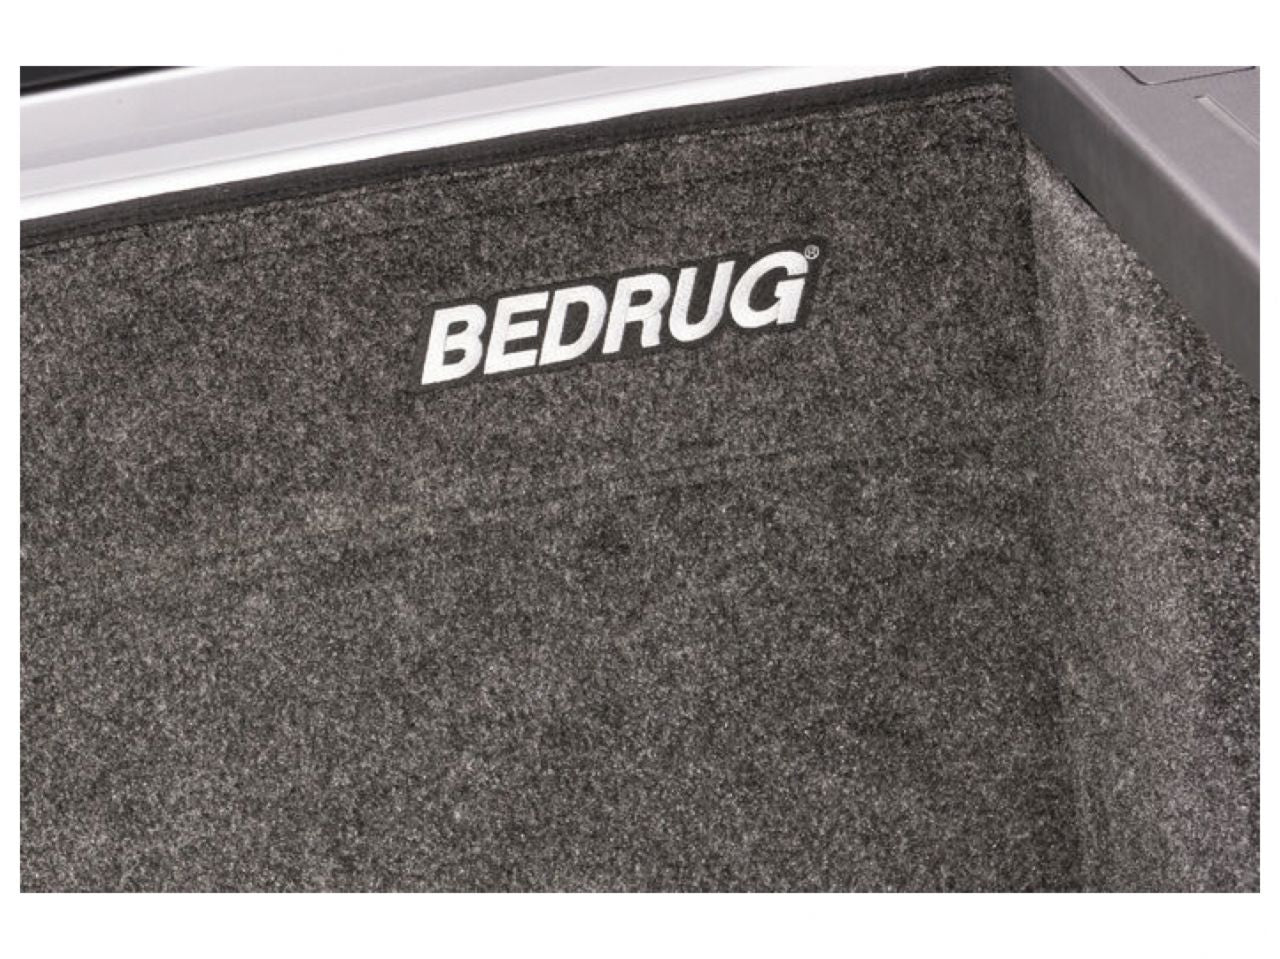 Bedrug 19+ Silverado /Sierra 5' 8" Bed W/Out Multi -ProTailgate